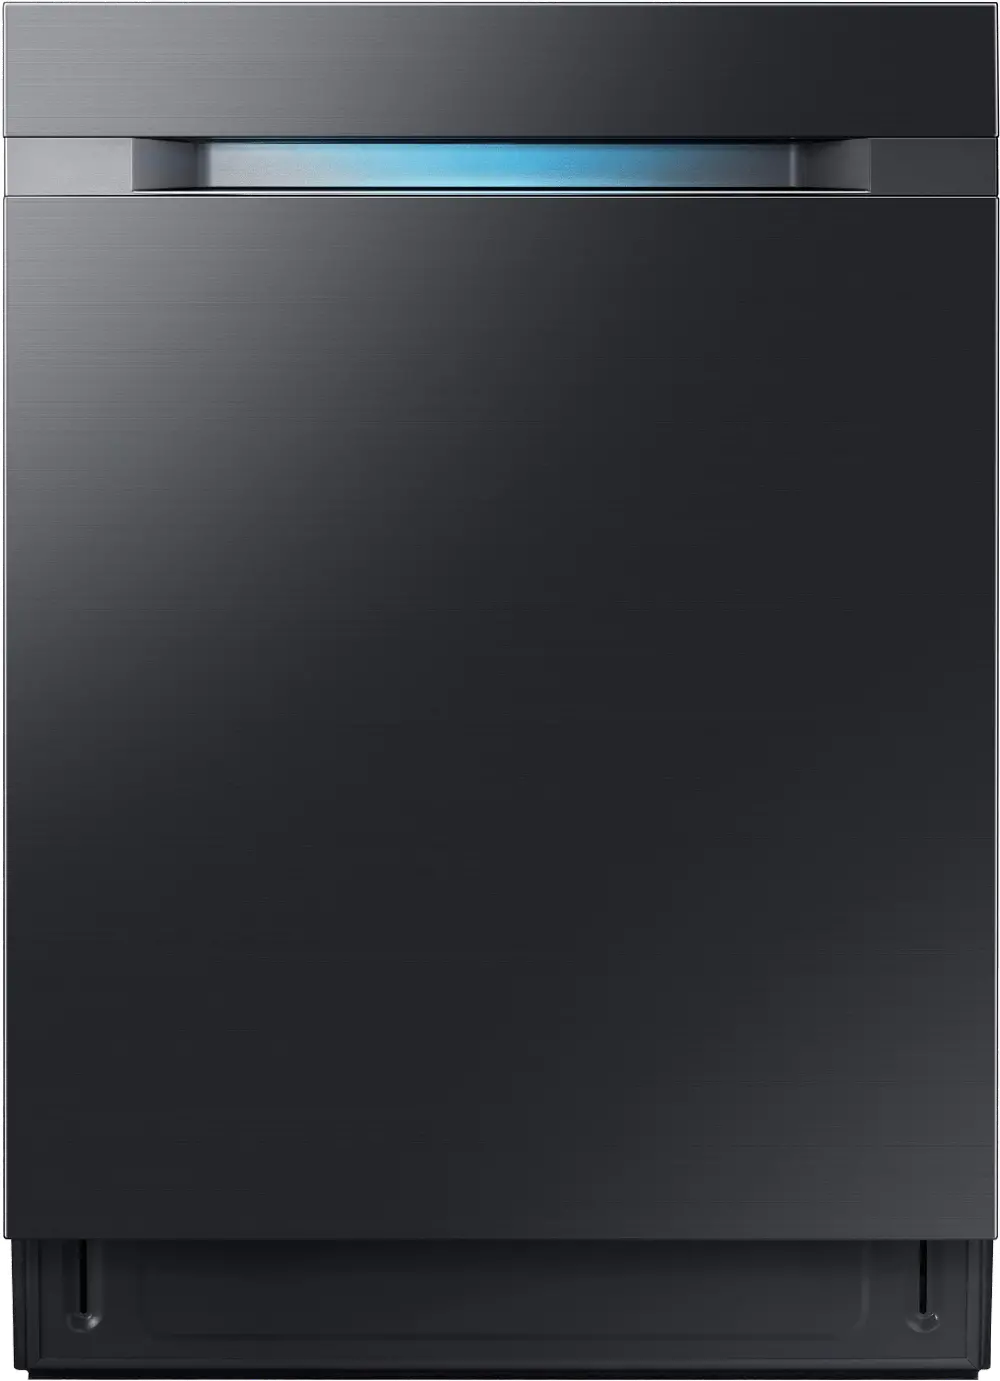 DW80M9990UM Samsung Chef Hidden Touch Control Dishwasher - Black Stainless Steel-1